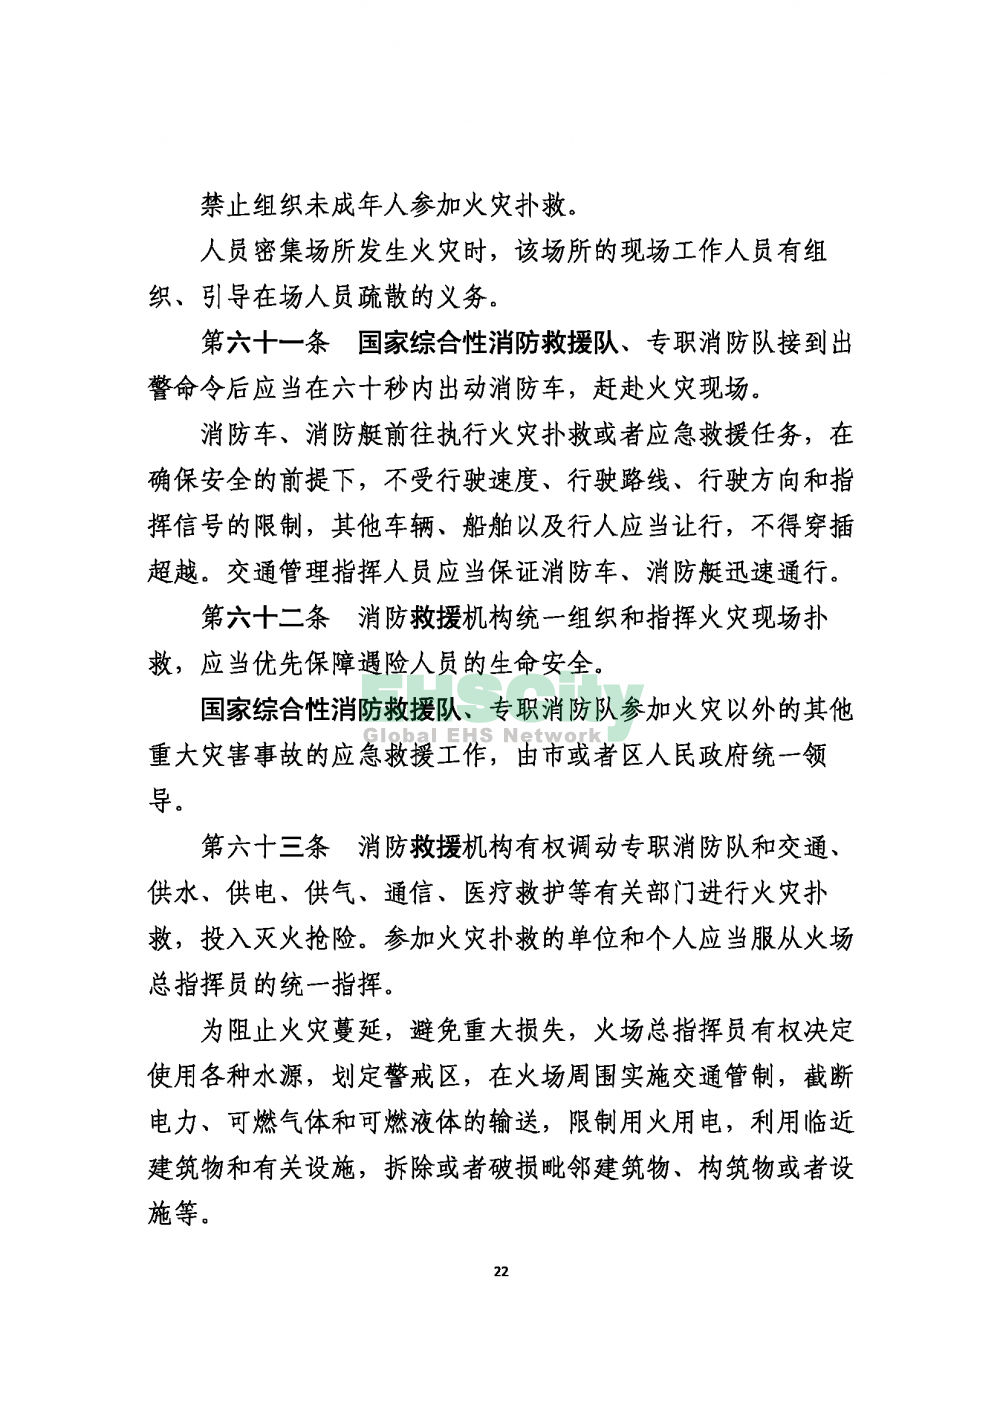 2020版上海消防条例_页面_22